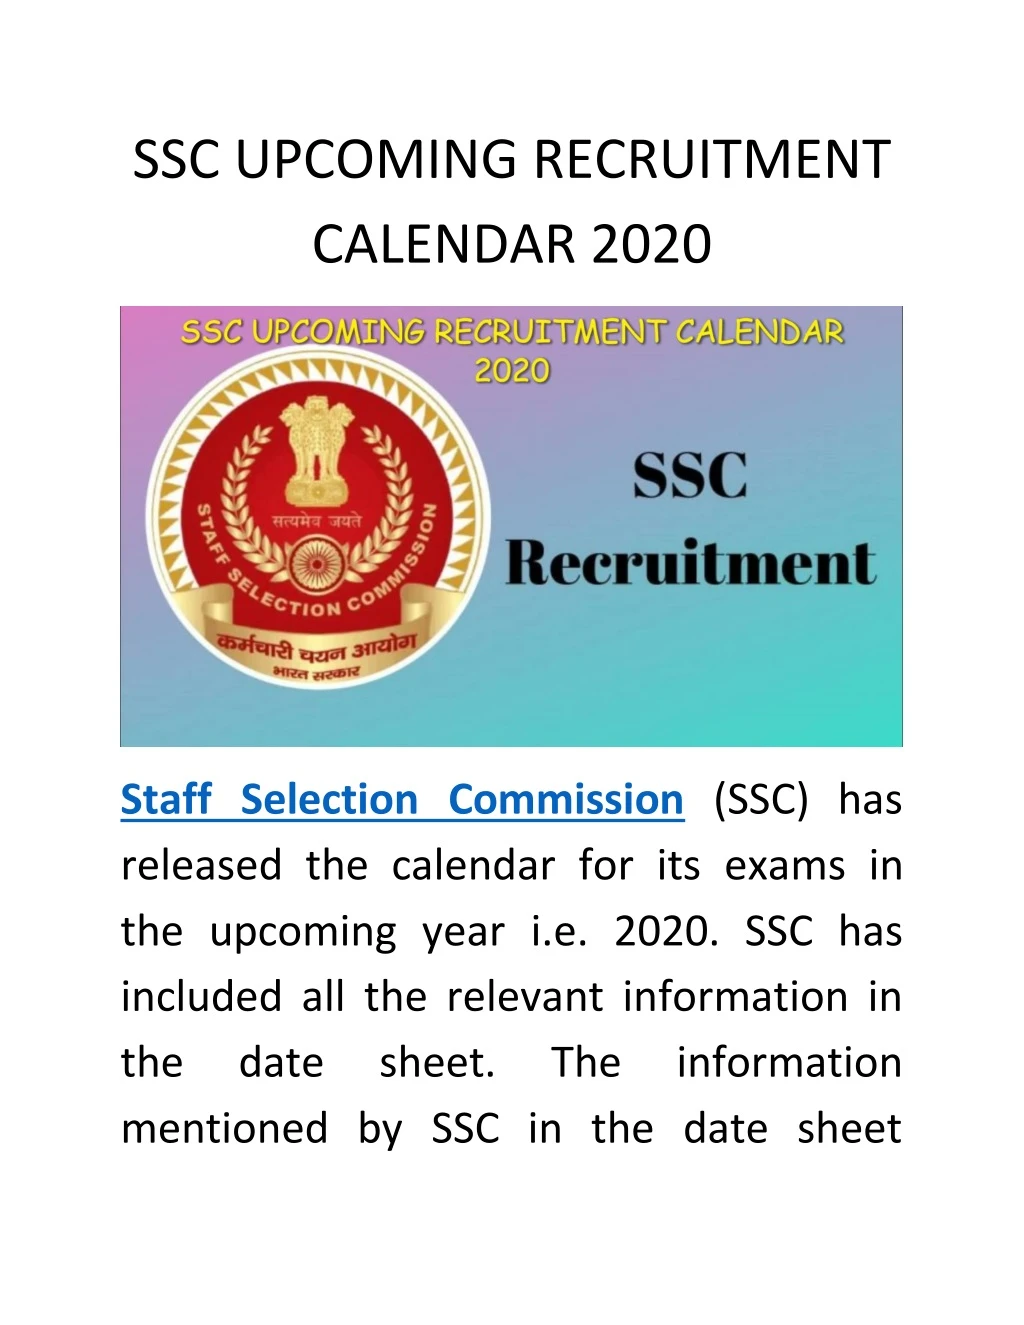 ssc upcoming recruitment calendar 2020